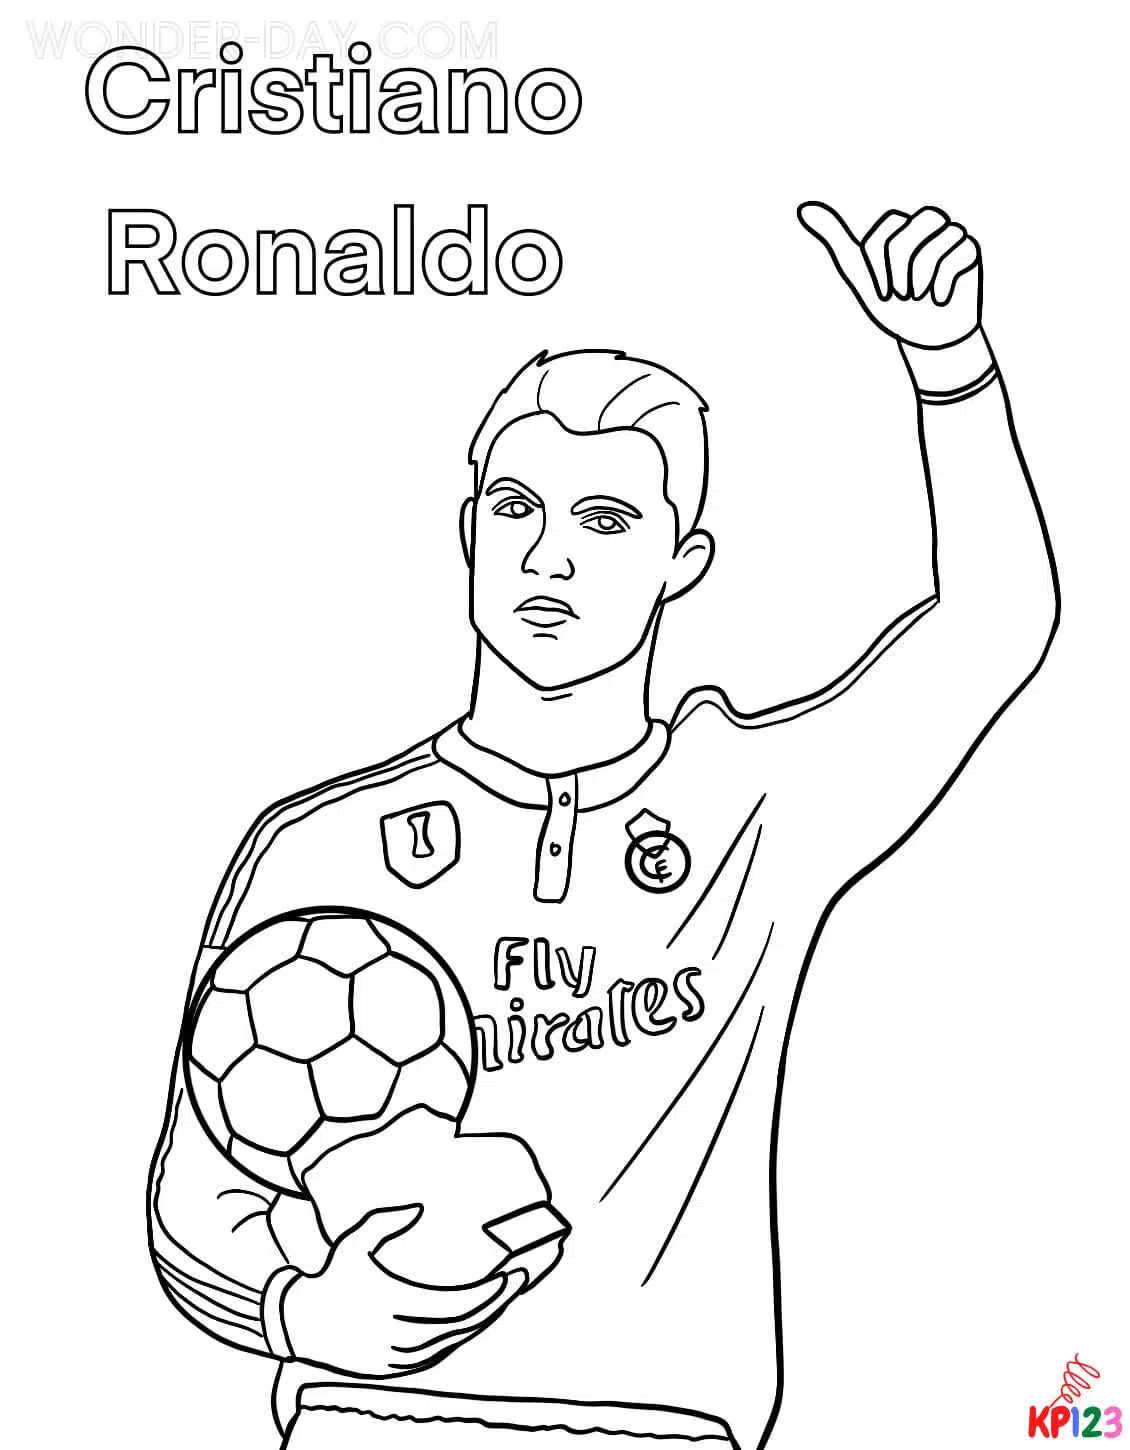 Ronaldo (10)